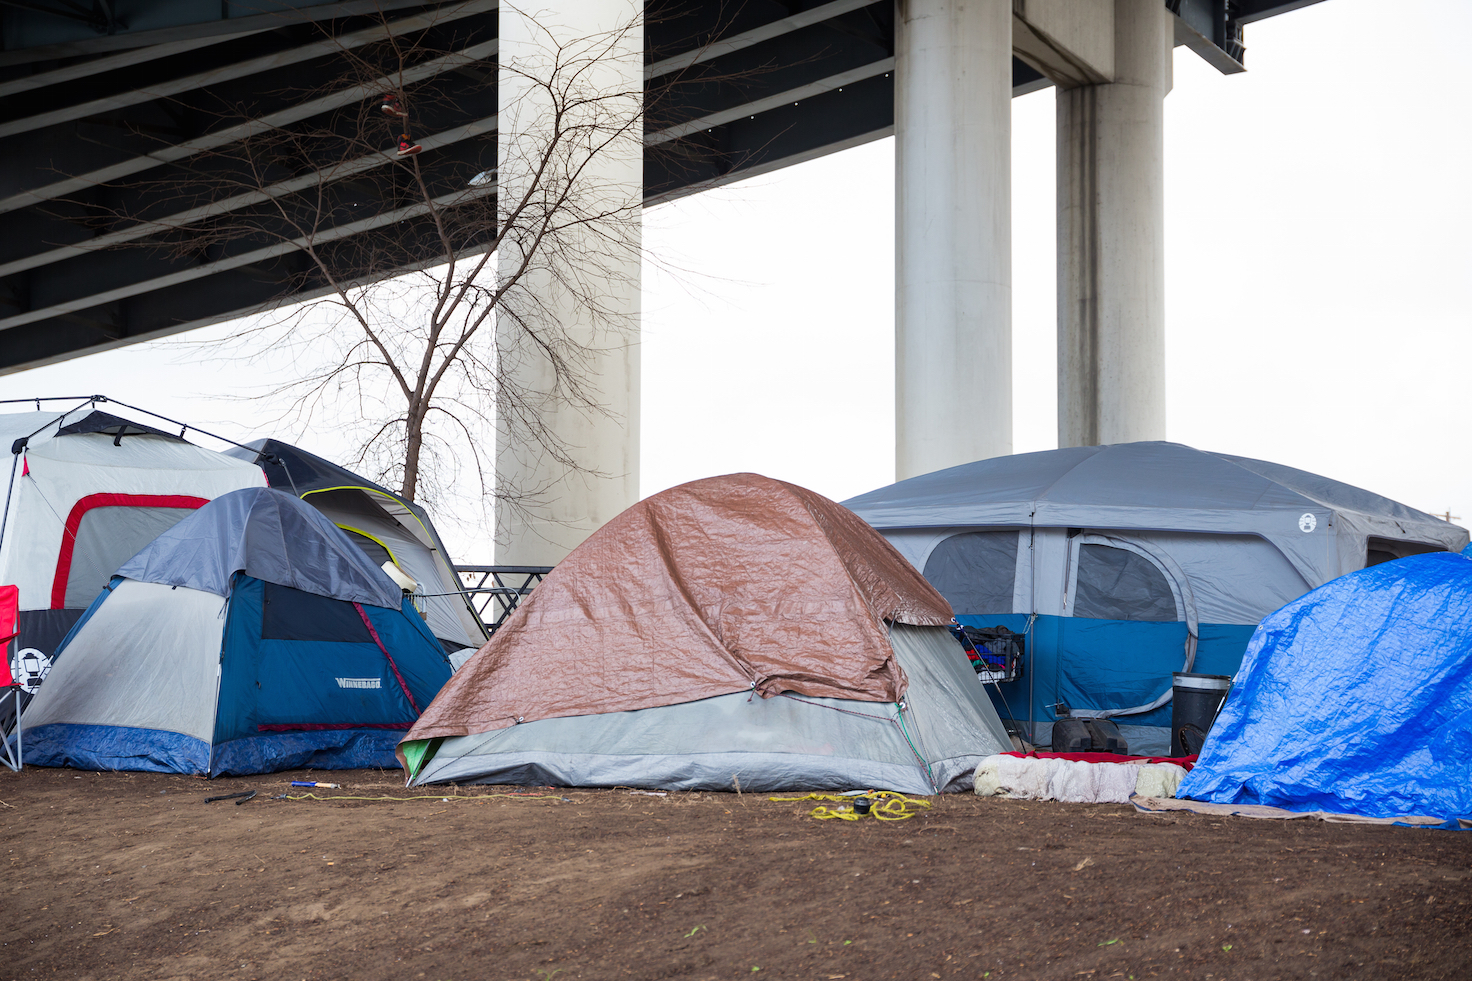 Бомжи в палатке. Портланд палатки бездомных. Палатки бездомных в США. Палаточный домик бомжей в Америке.